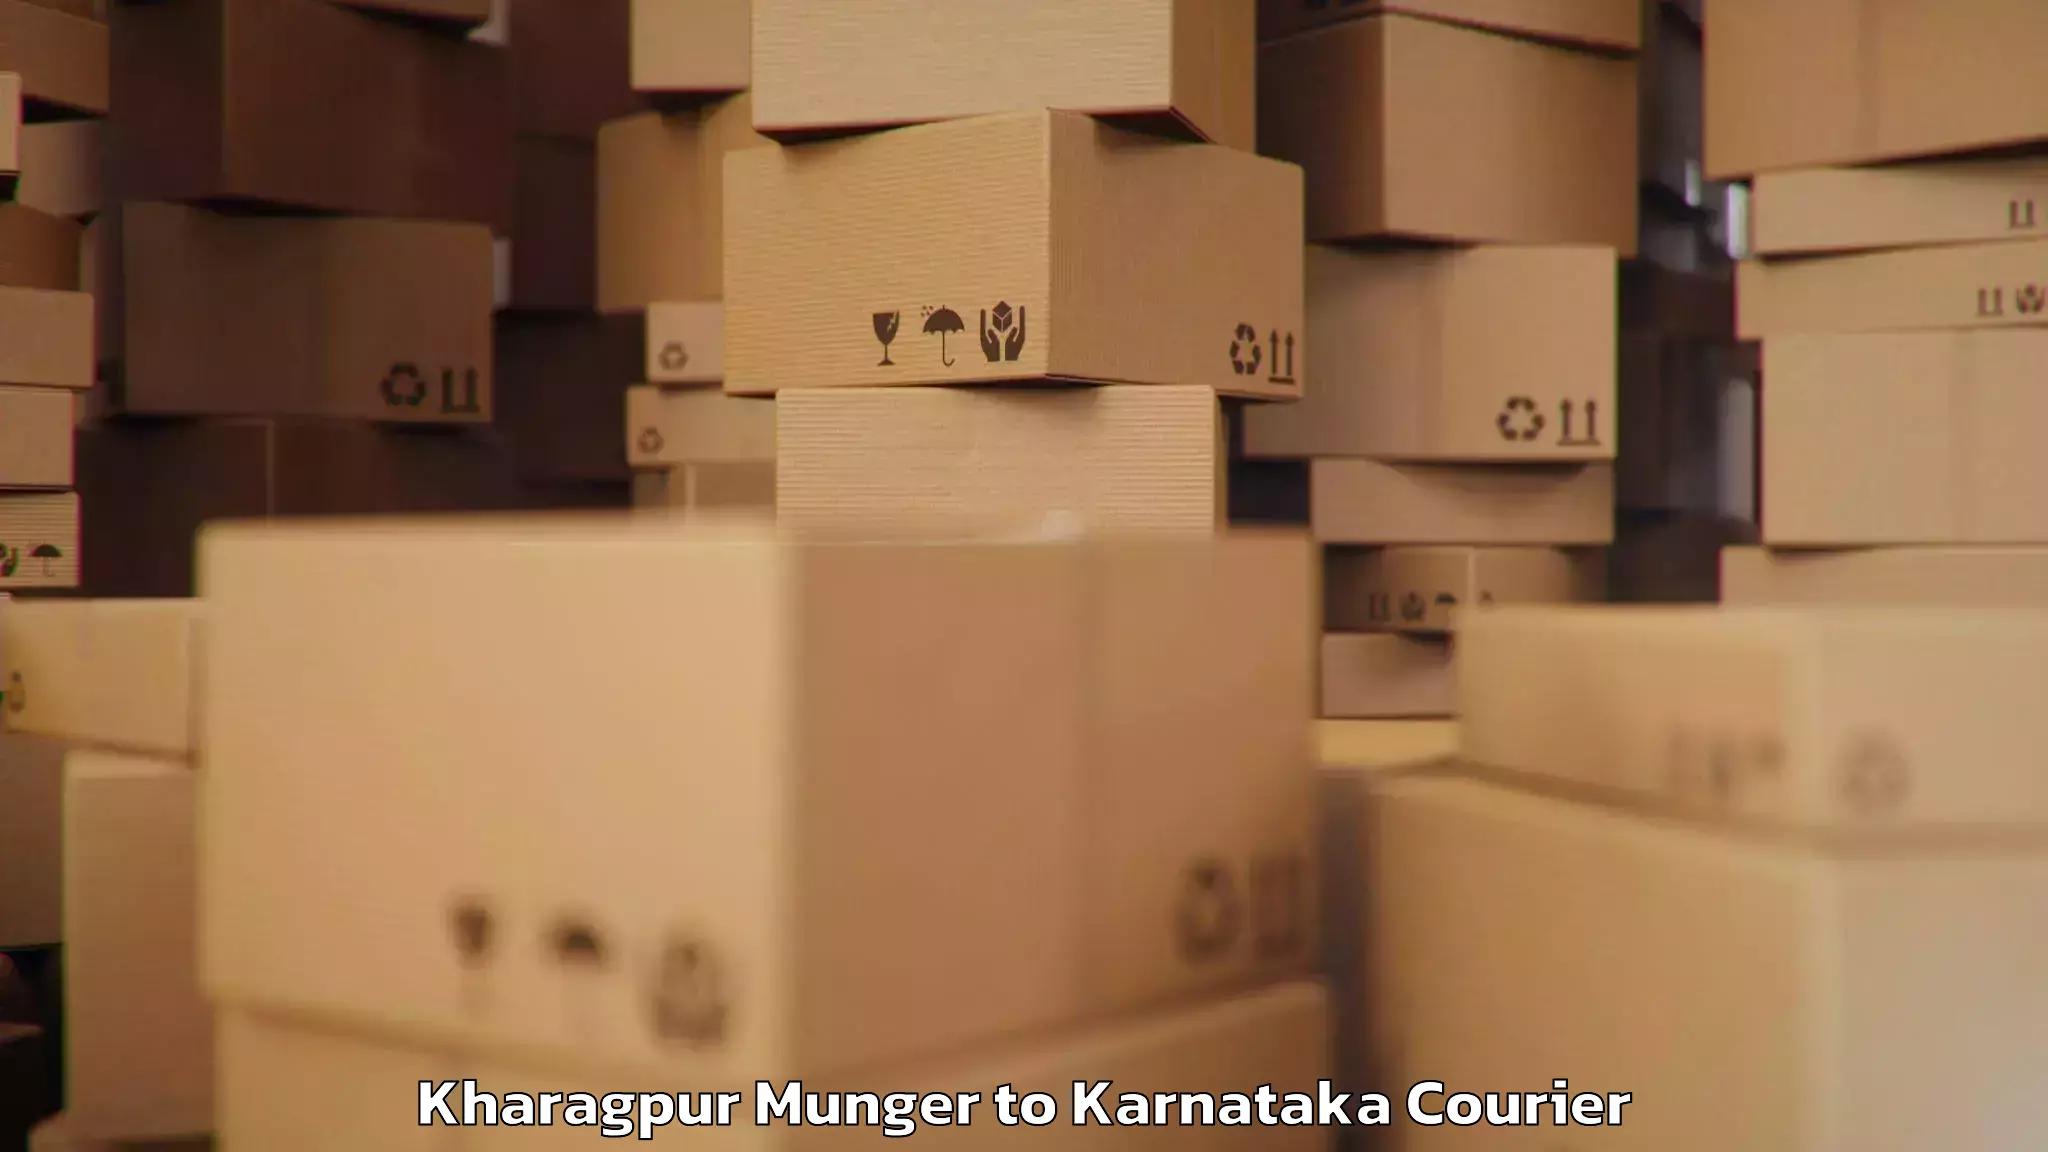 Baggage transport scheduler Kharagpur Munger to Bellary